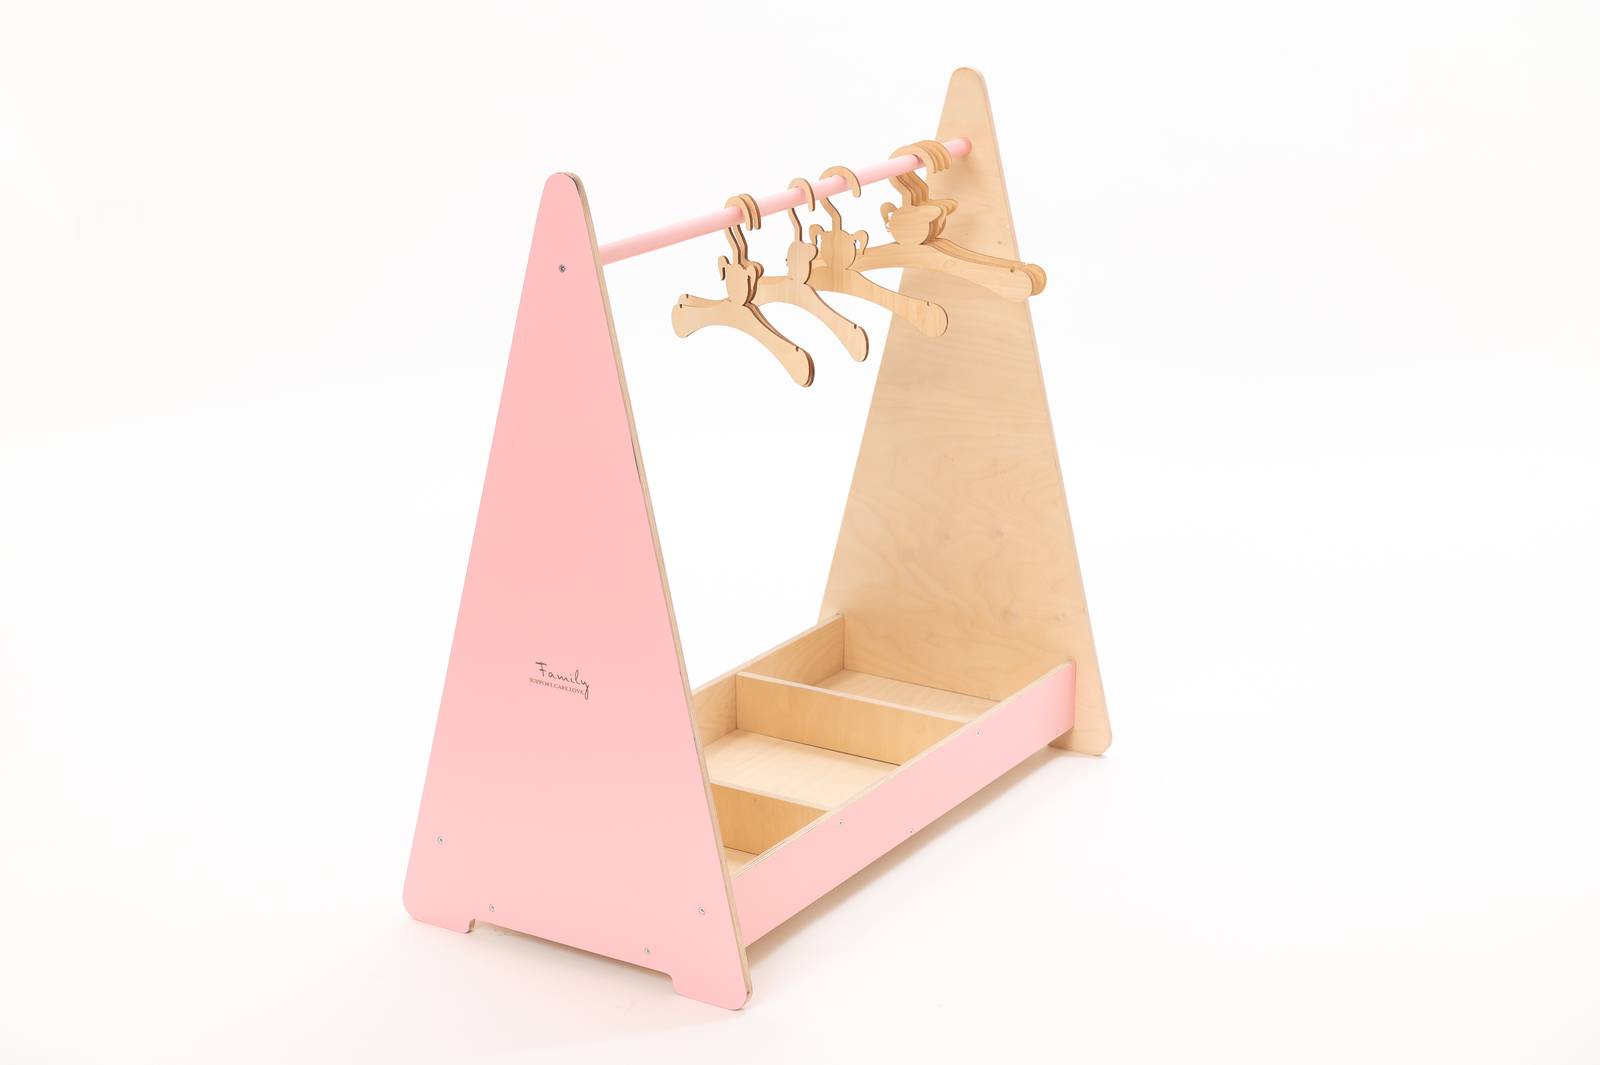 Kleiderständer für Babyzimmer & Kinderzimmer inkl. Kleiderbügel aus Holz pink -